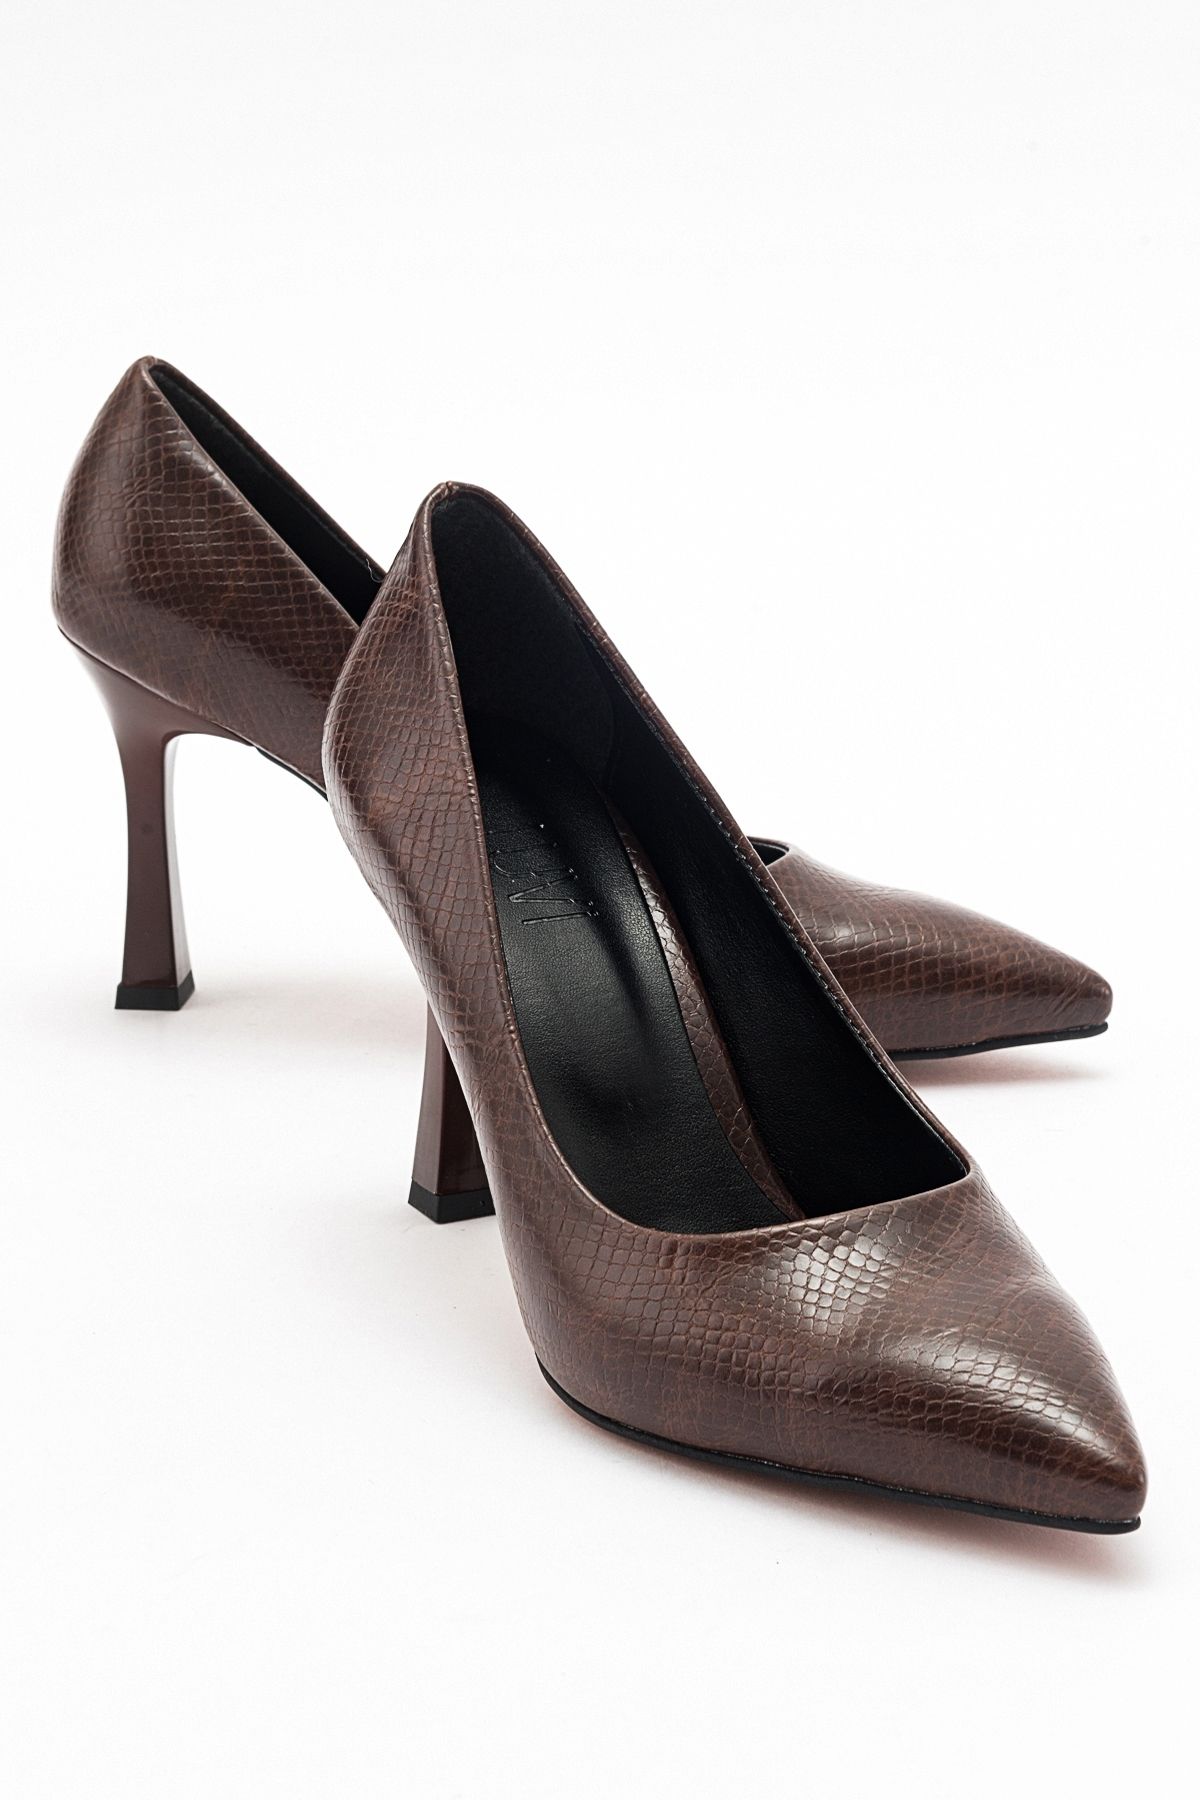 luvishoes FOREST Kahve Baskı Kadın Topuklu Ayakkabı